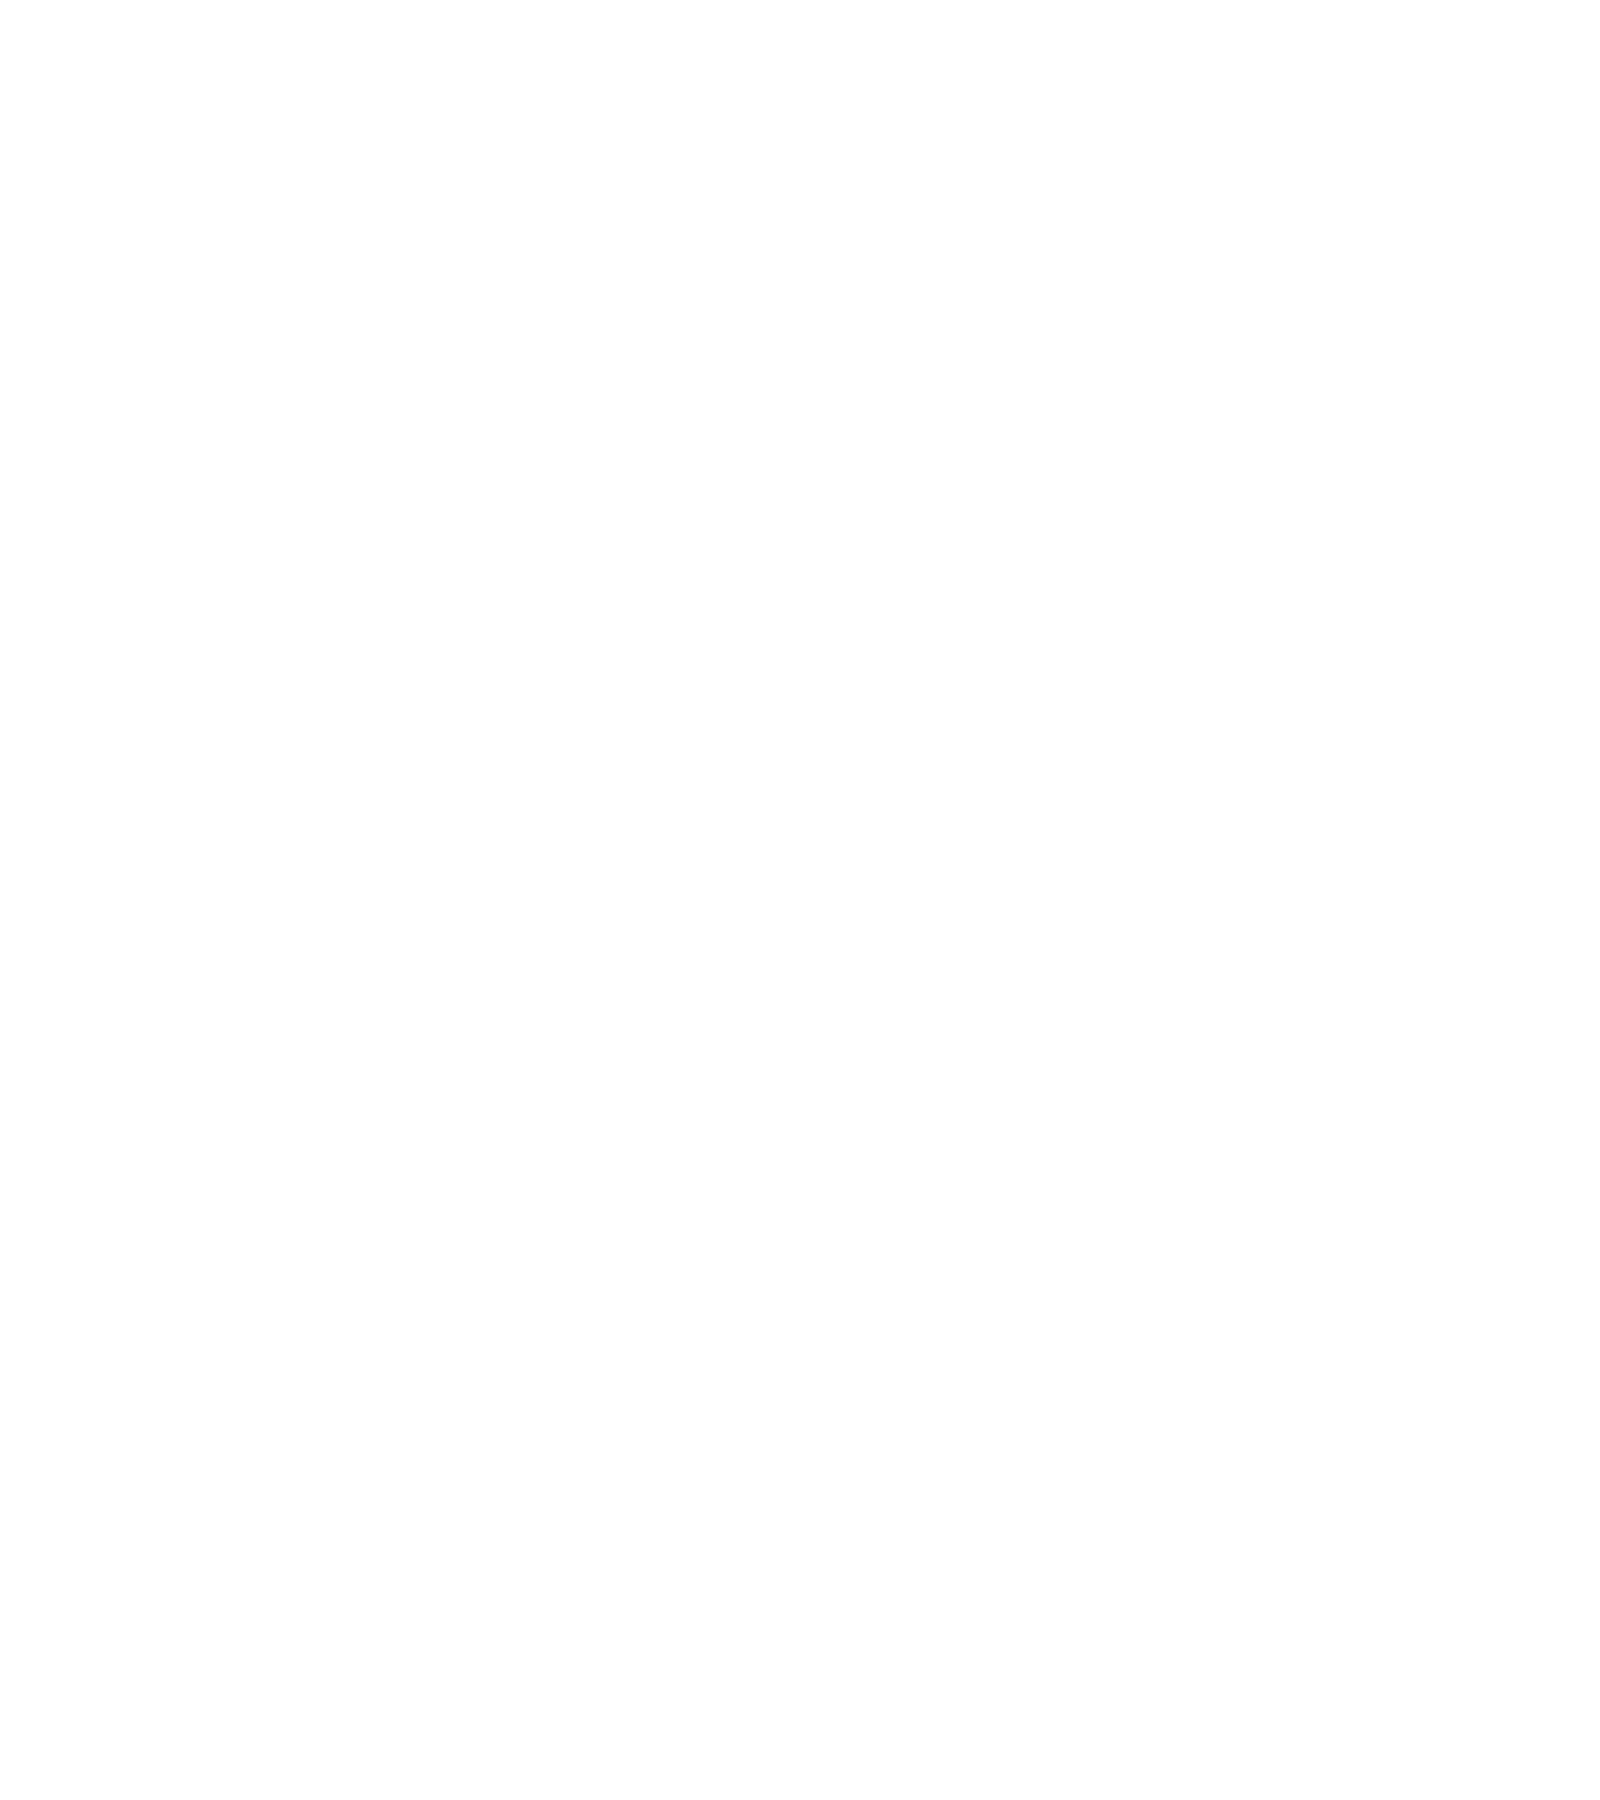 Willis Lane logo